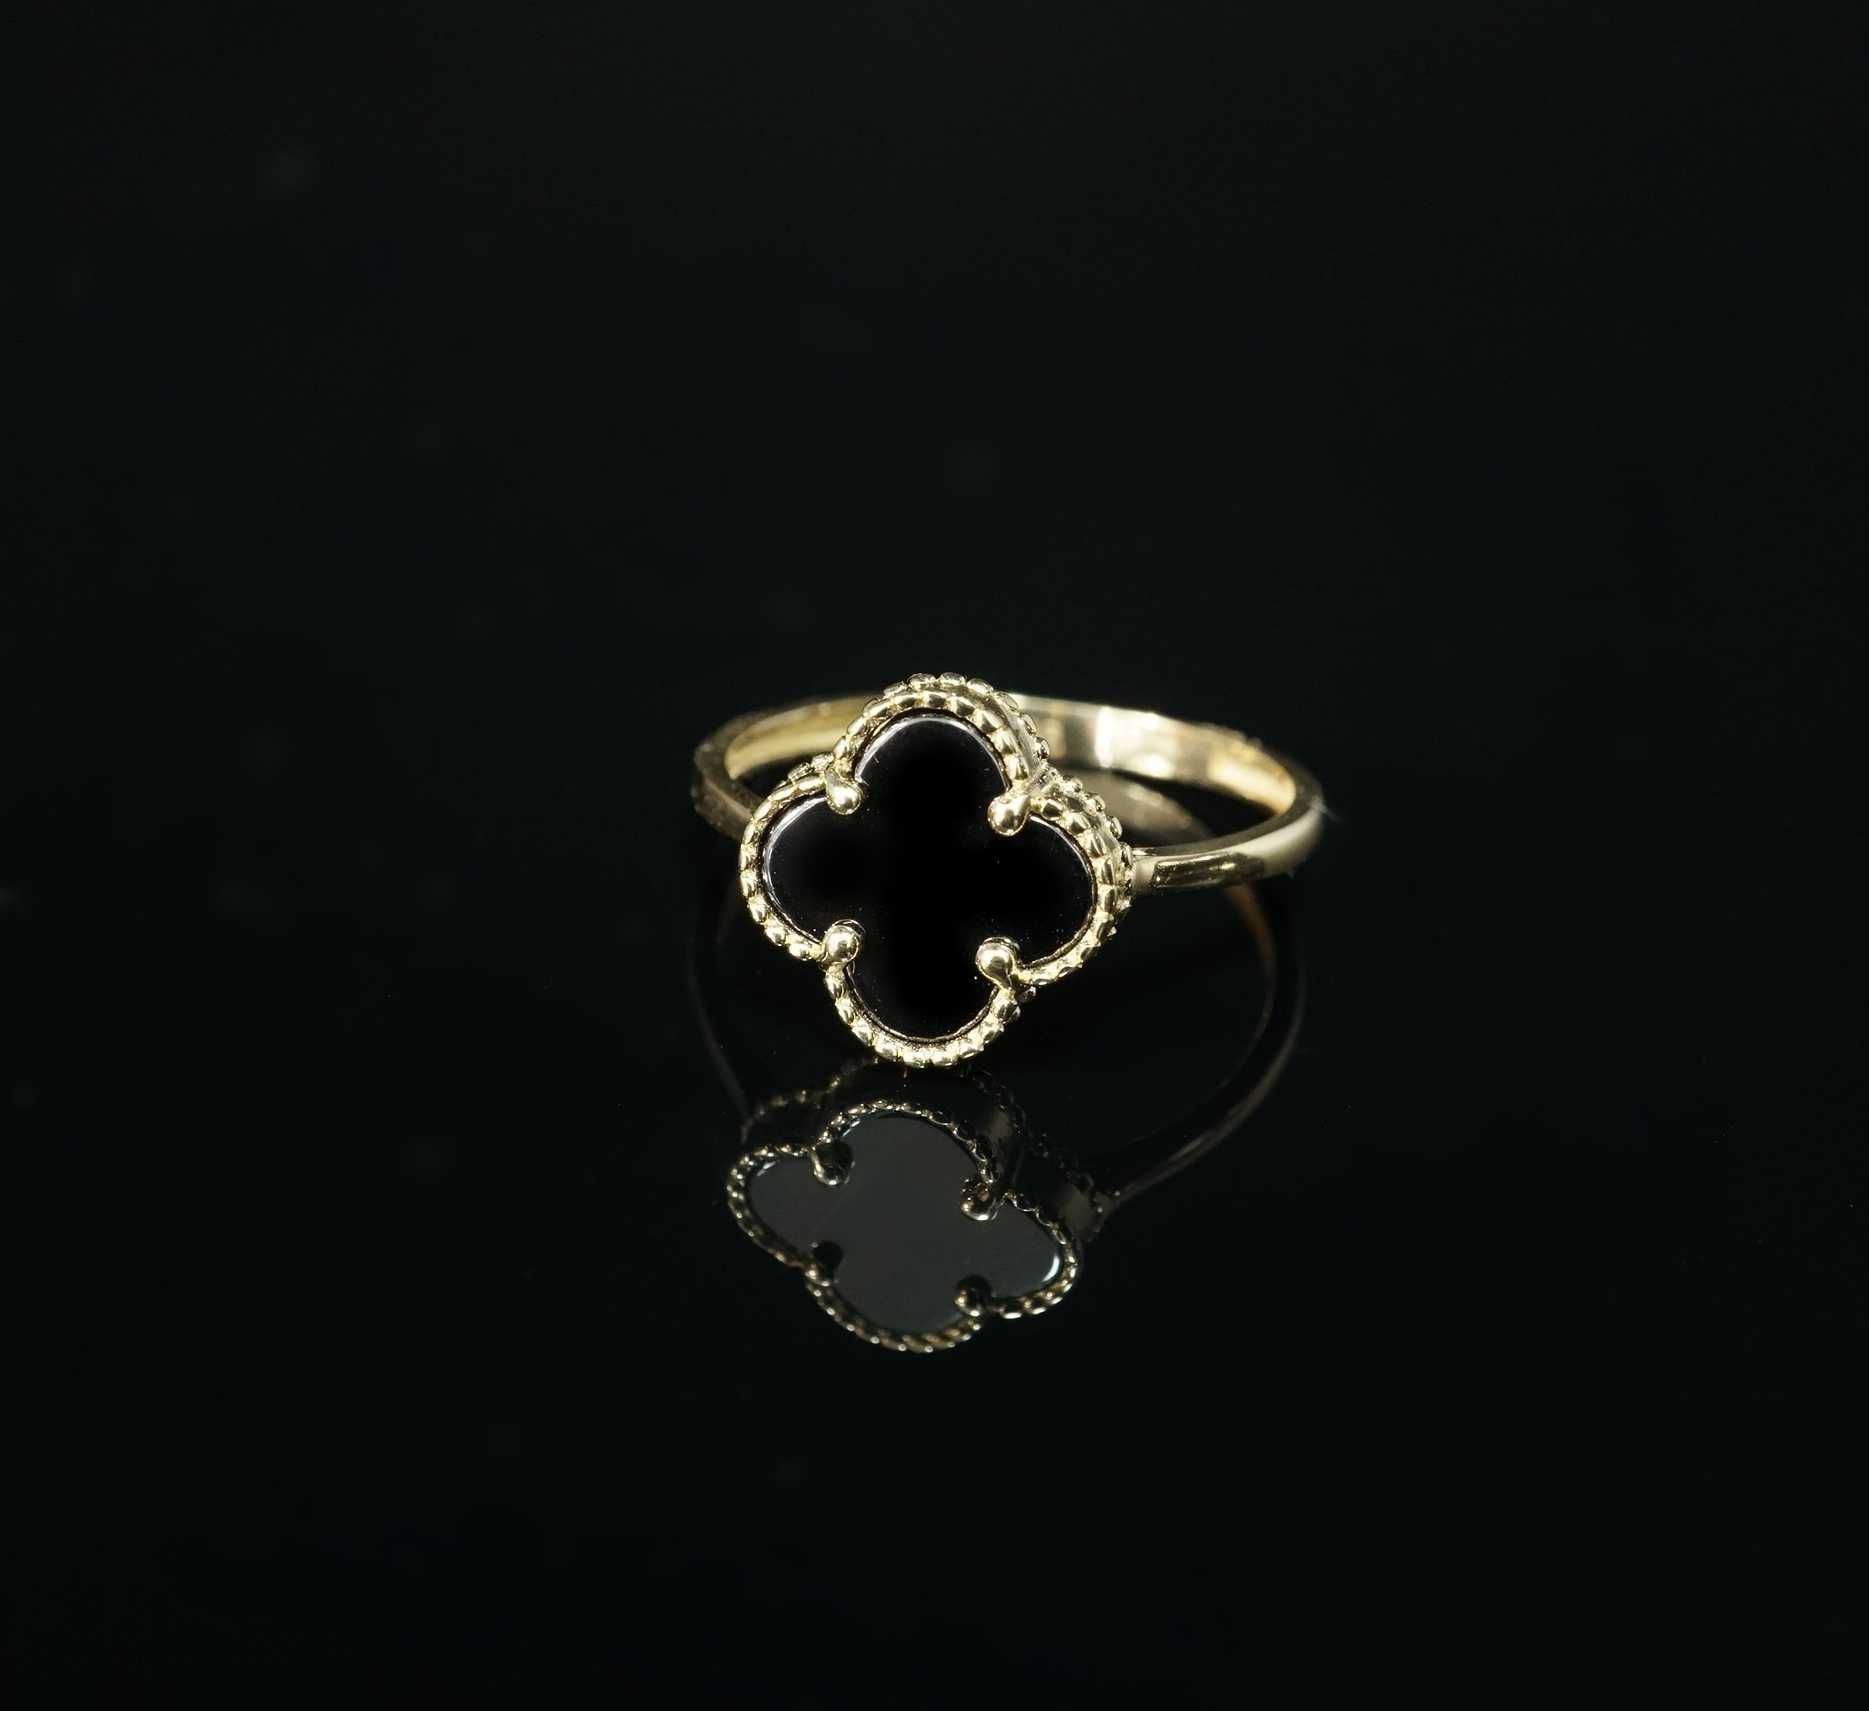 Złoto 585 - Złoty pierścionek damski Koniczynka  Rozmiar 21